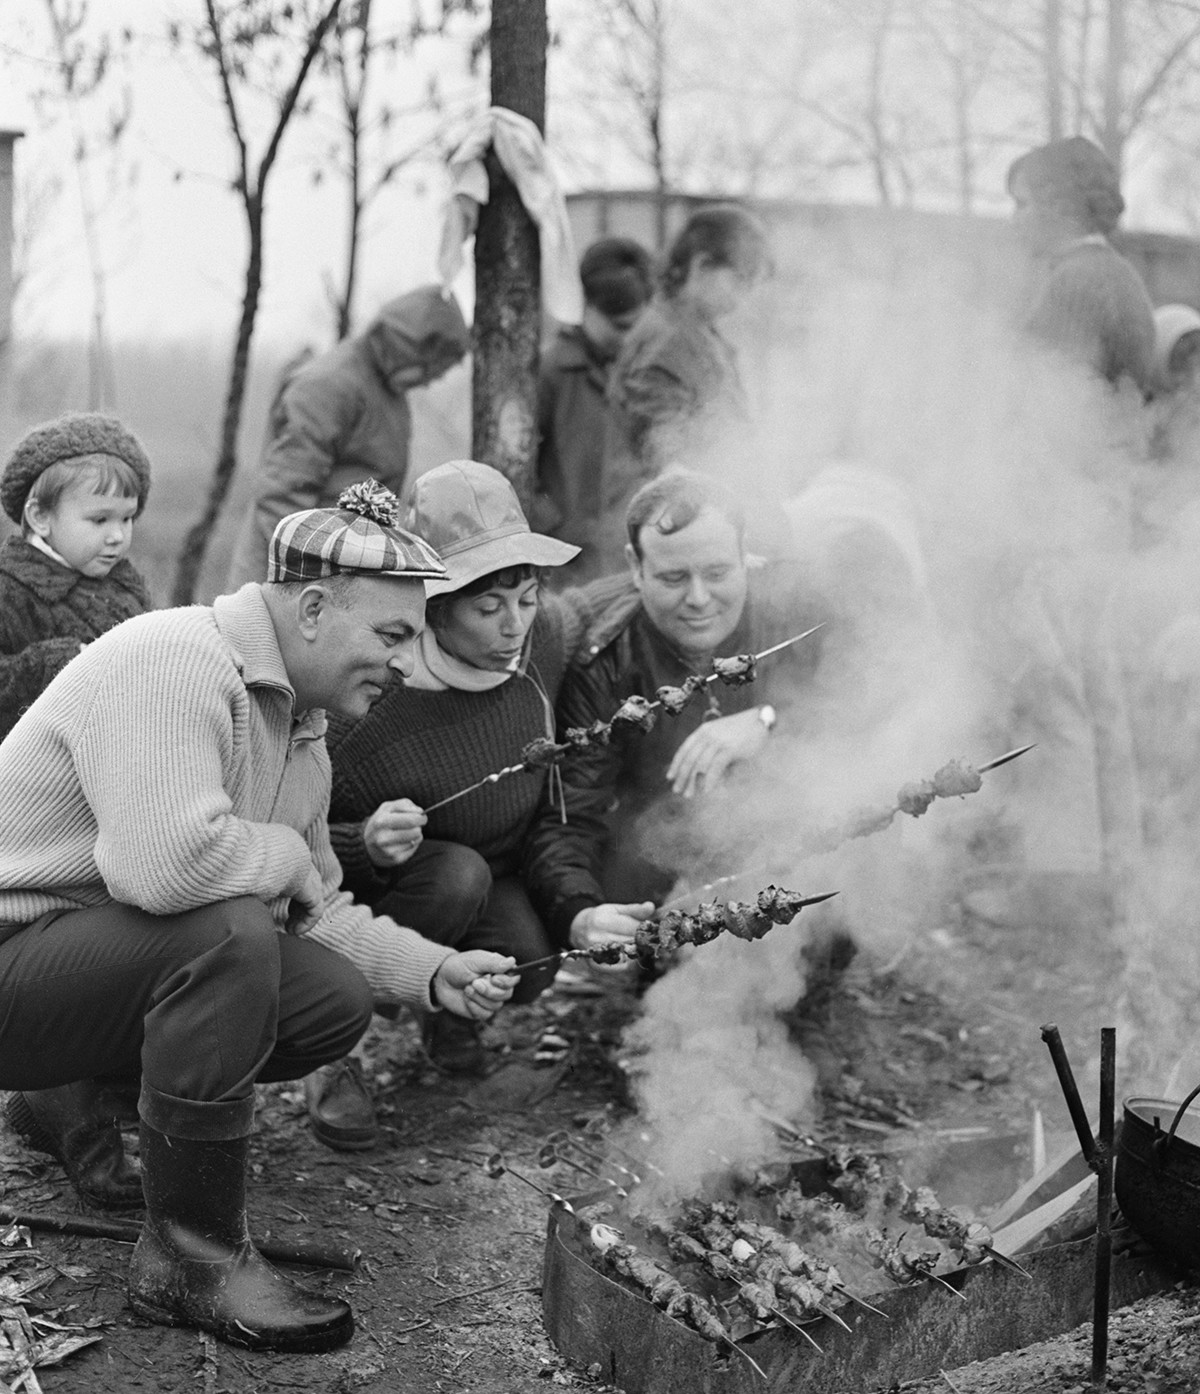 Grozni. Ingenieros franceses, alemanes y soviéticos asando carne en su día libre, 1970
